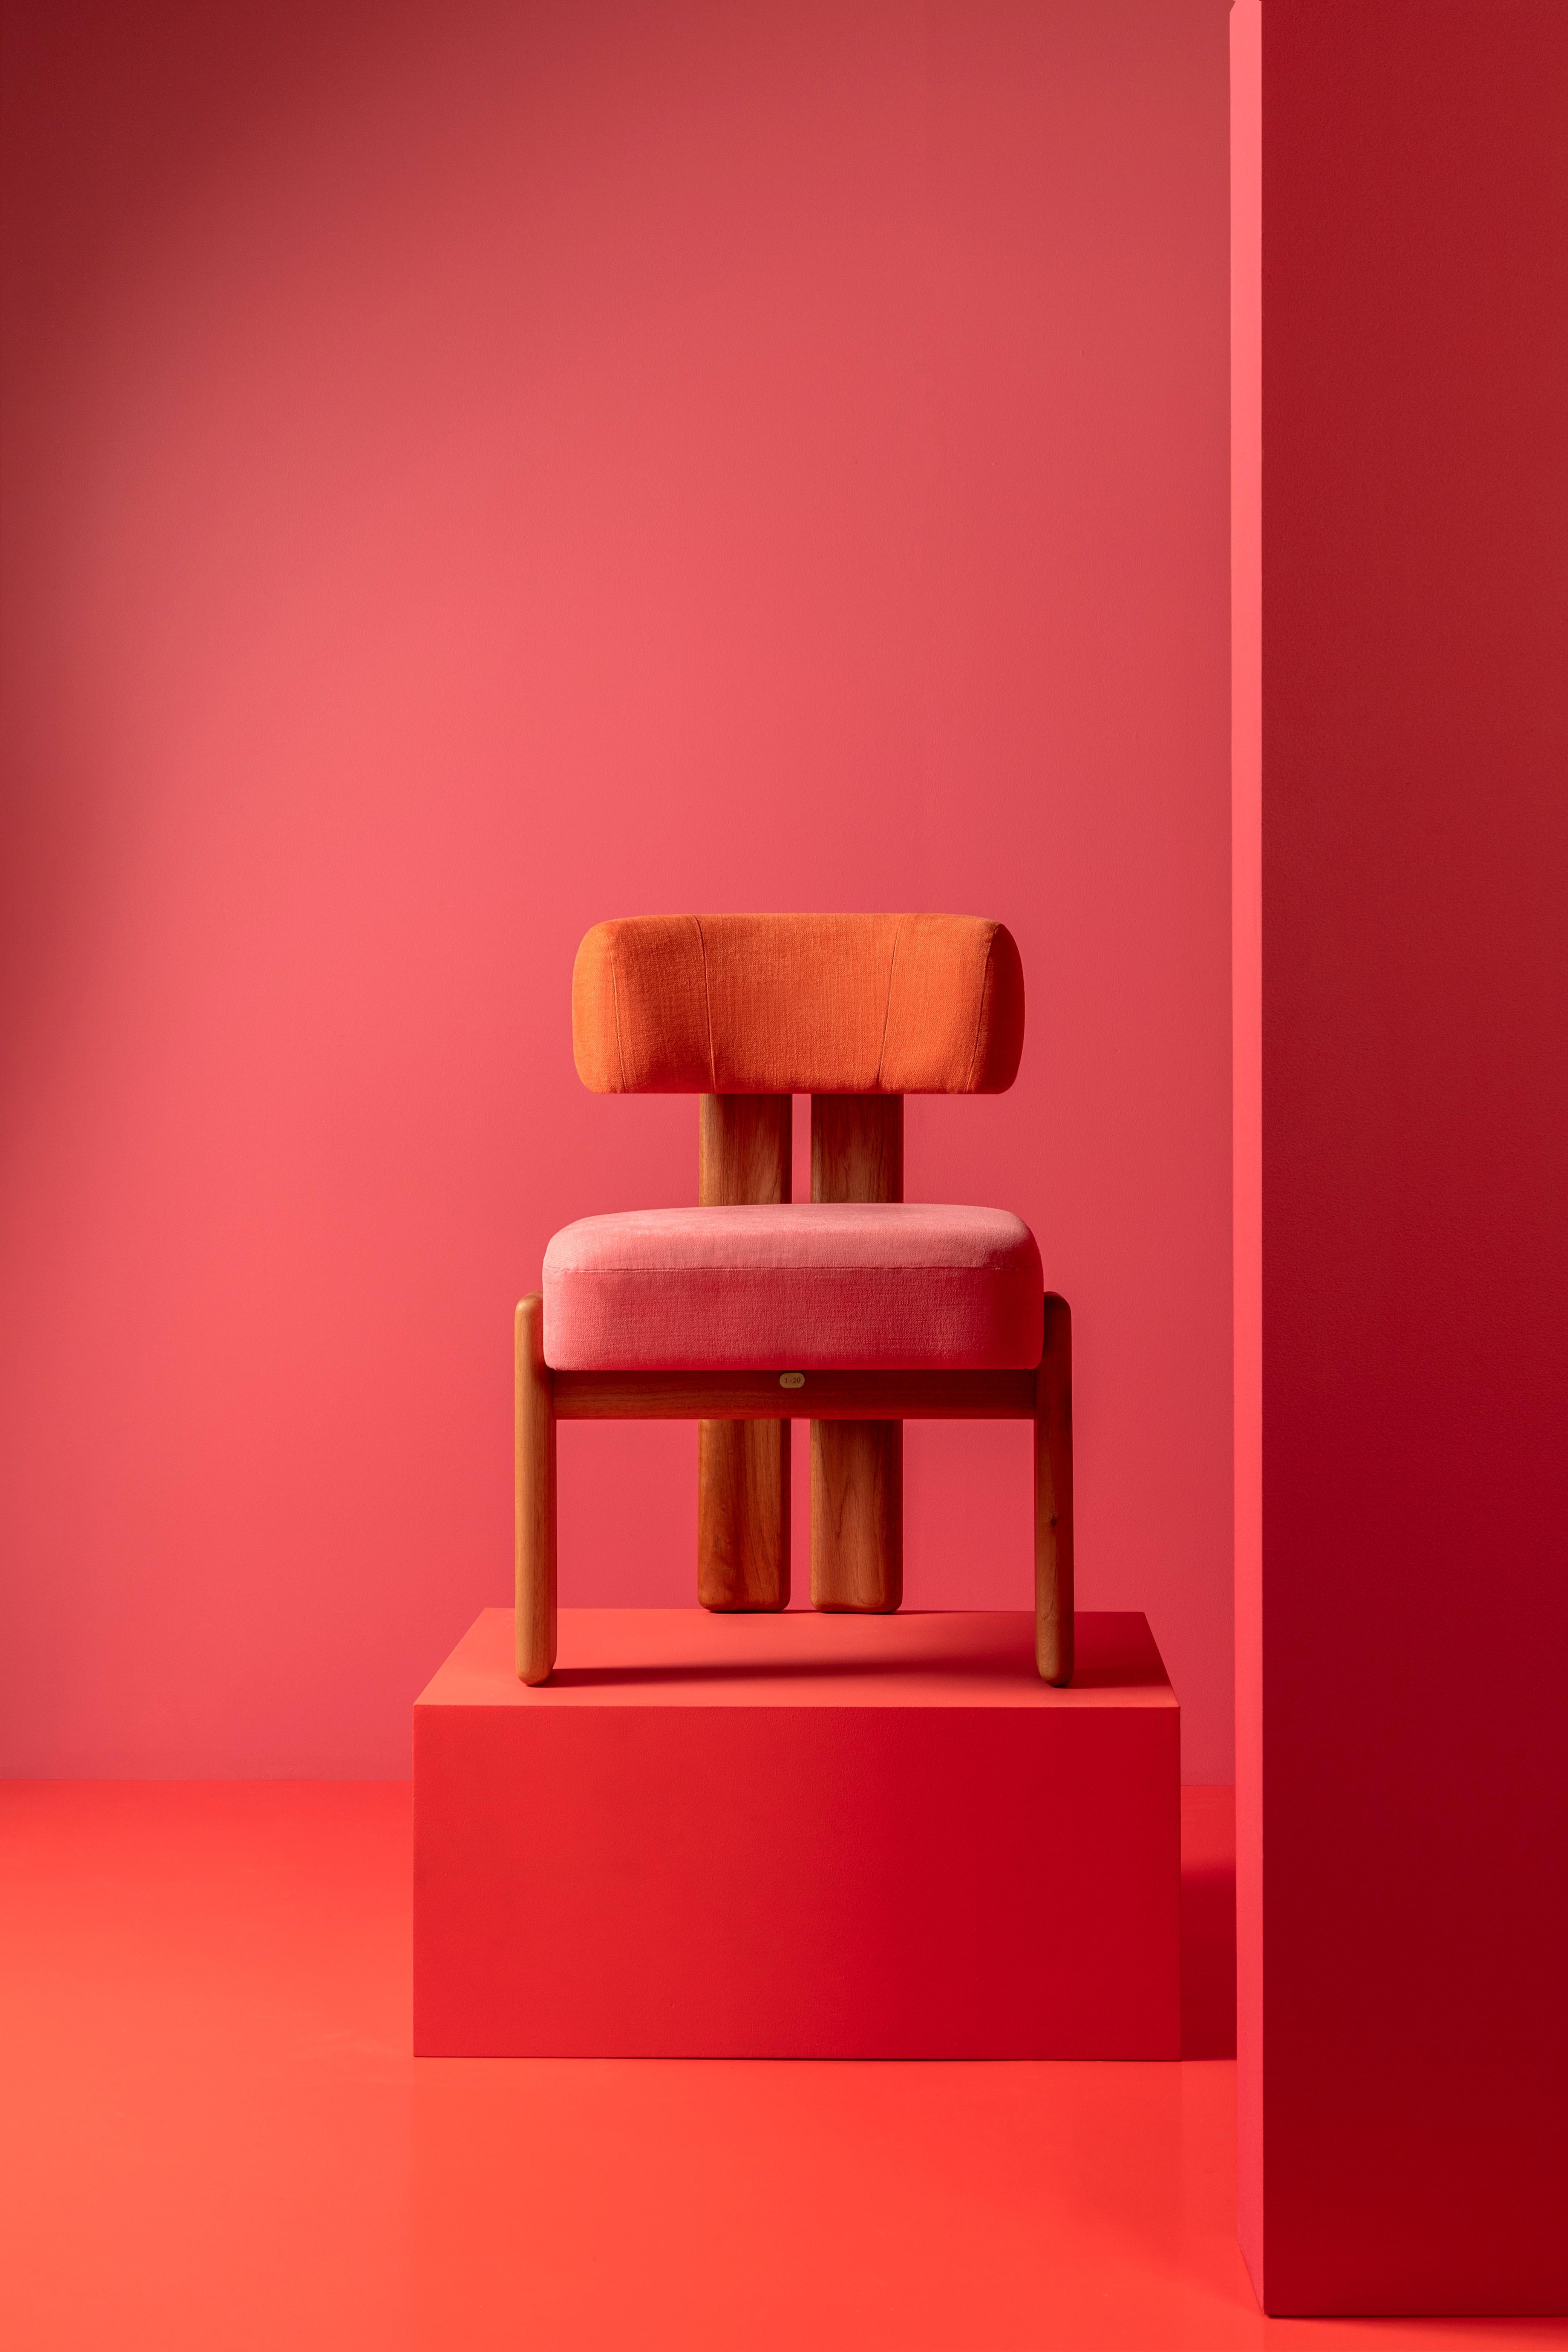 Inspirée par le travail de l'artiste textile du Bauhaus Anni Albers, cette version de la chaise de la paz, qui porte le nom de l'artiste, est une exploration de l'utilisation de la couleur par le biais de la collaboration.
MAYE, experts en